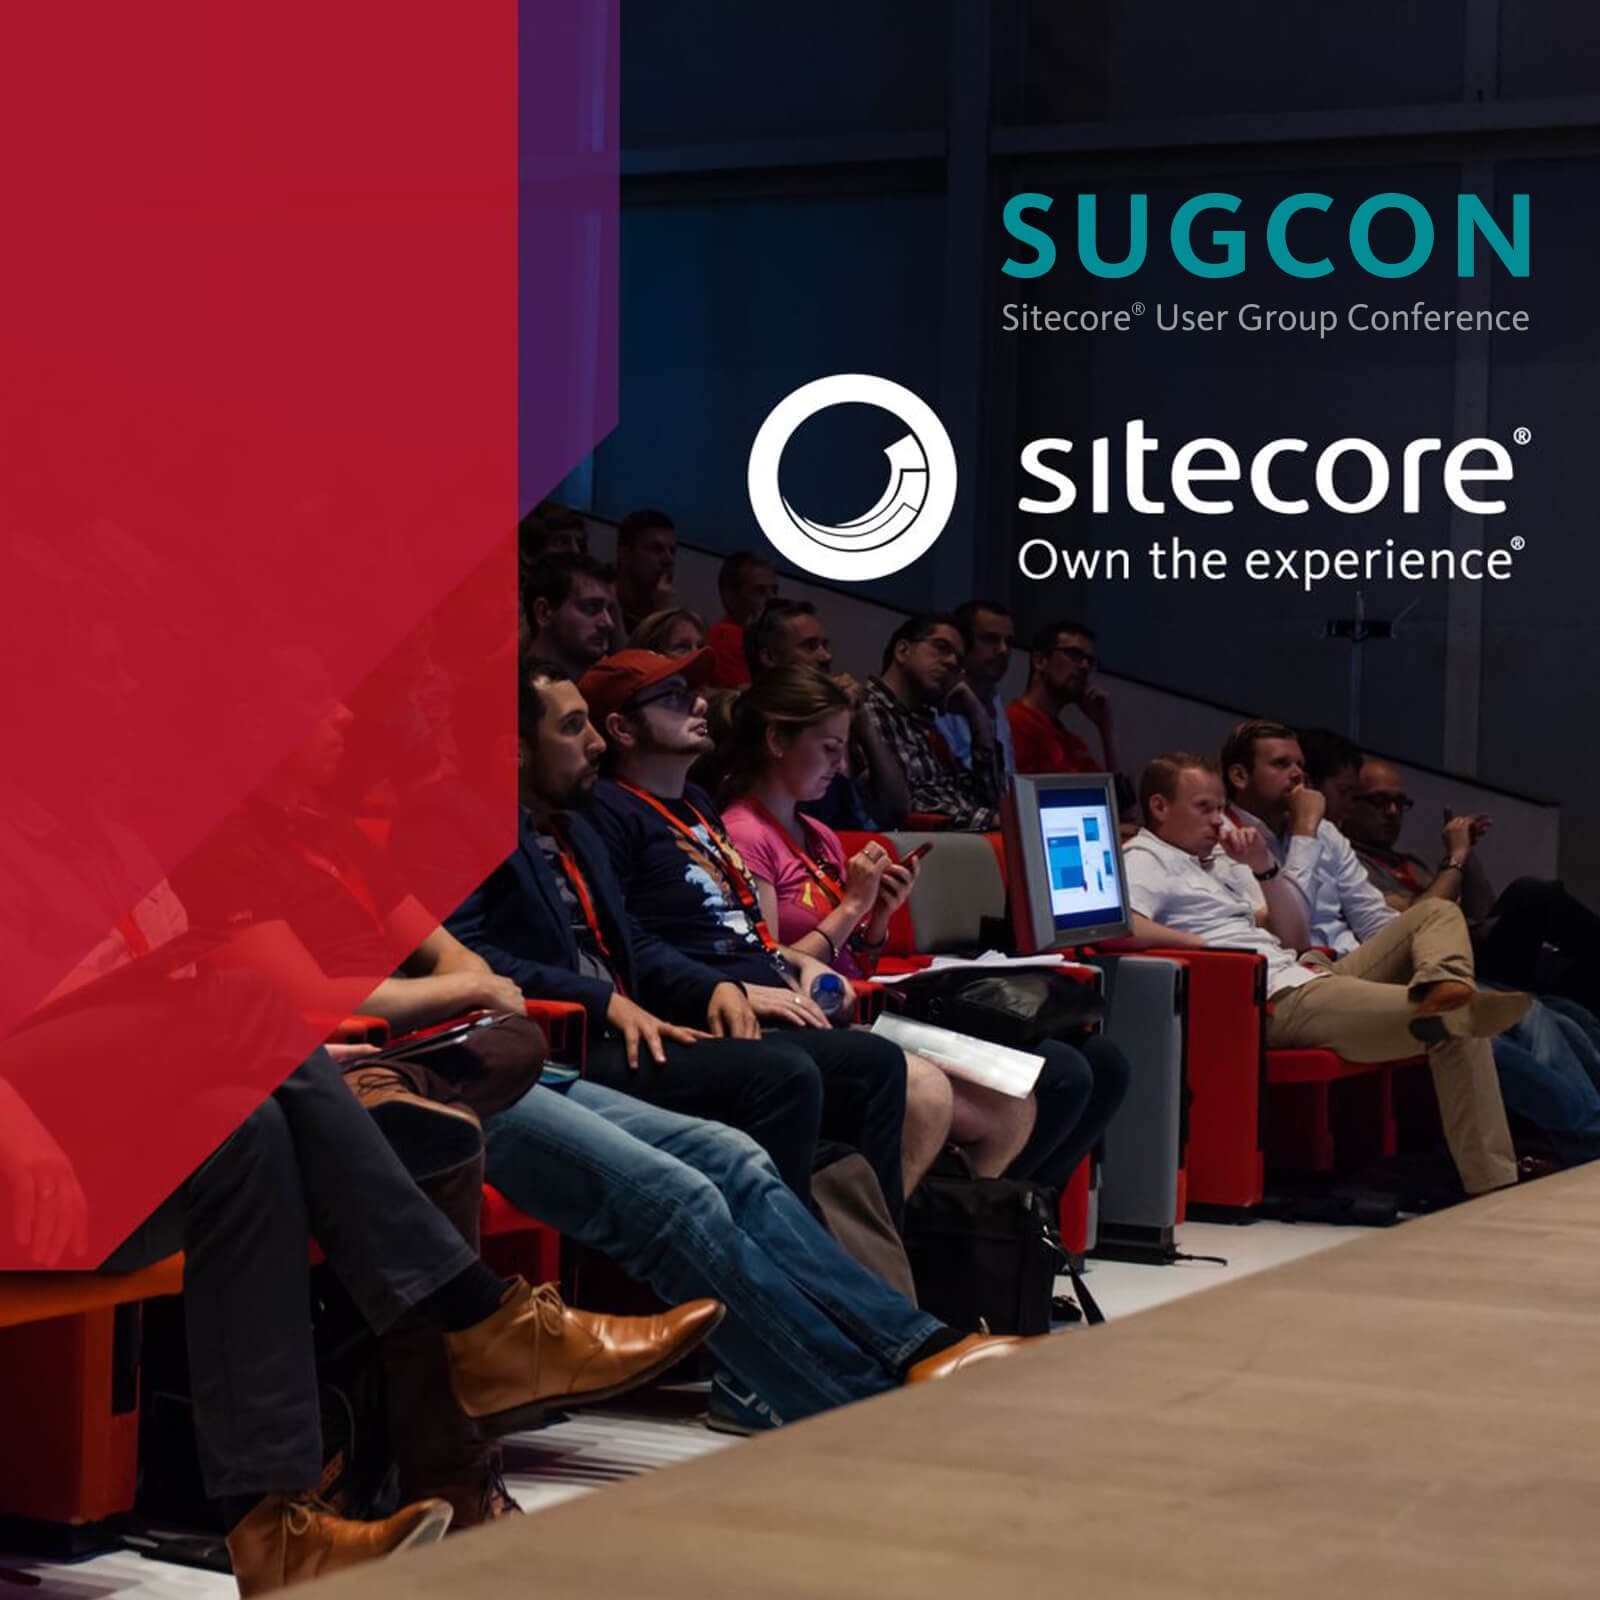 Iquality aanwezig tijdens Sugcon 2016 Sitecore